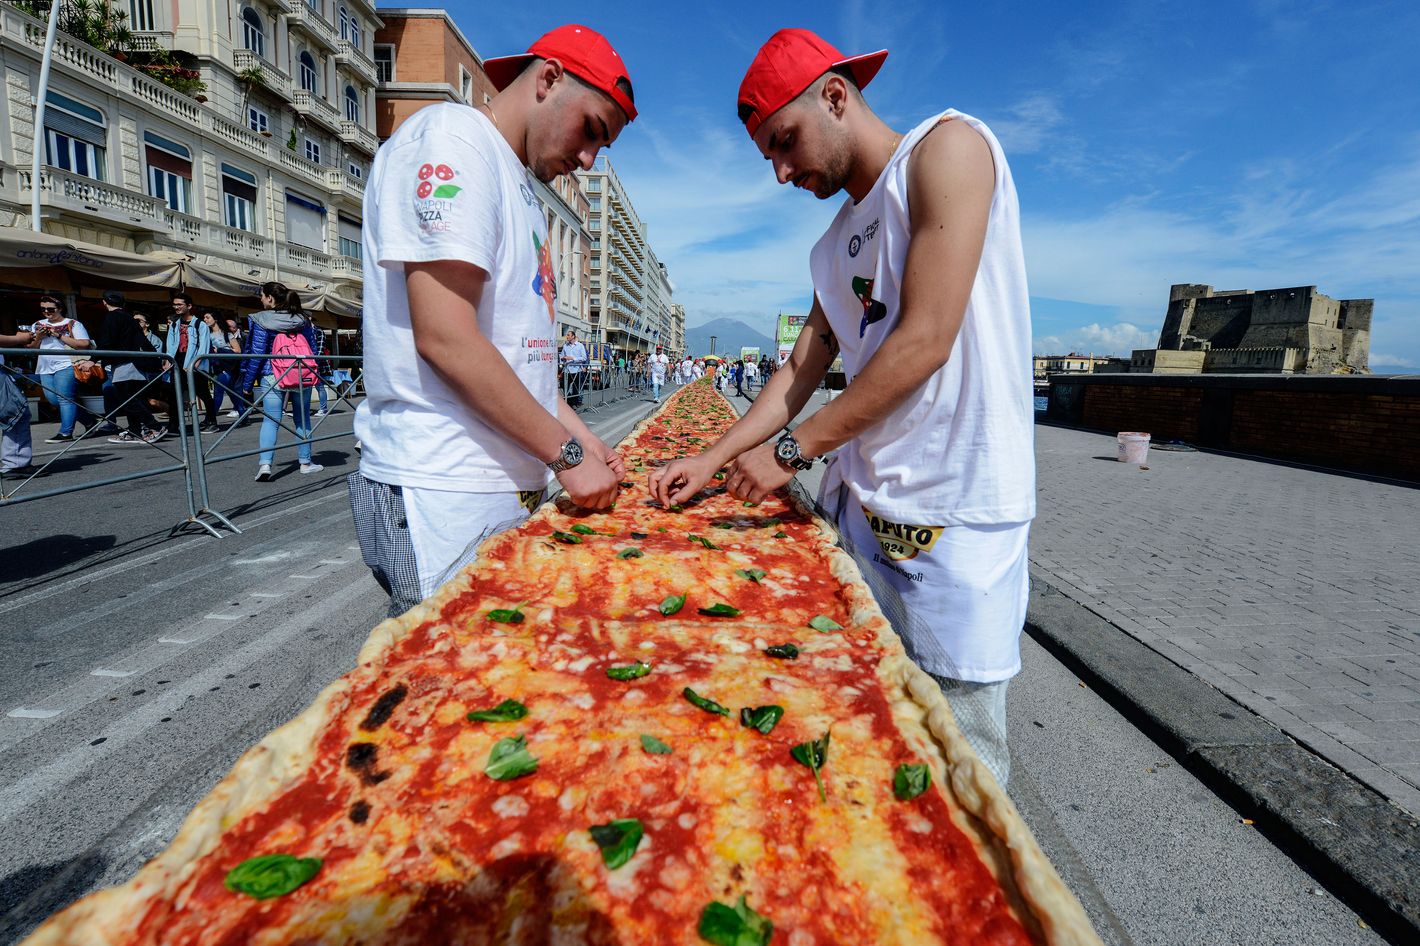 международный день пиццы